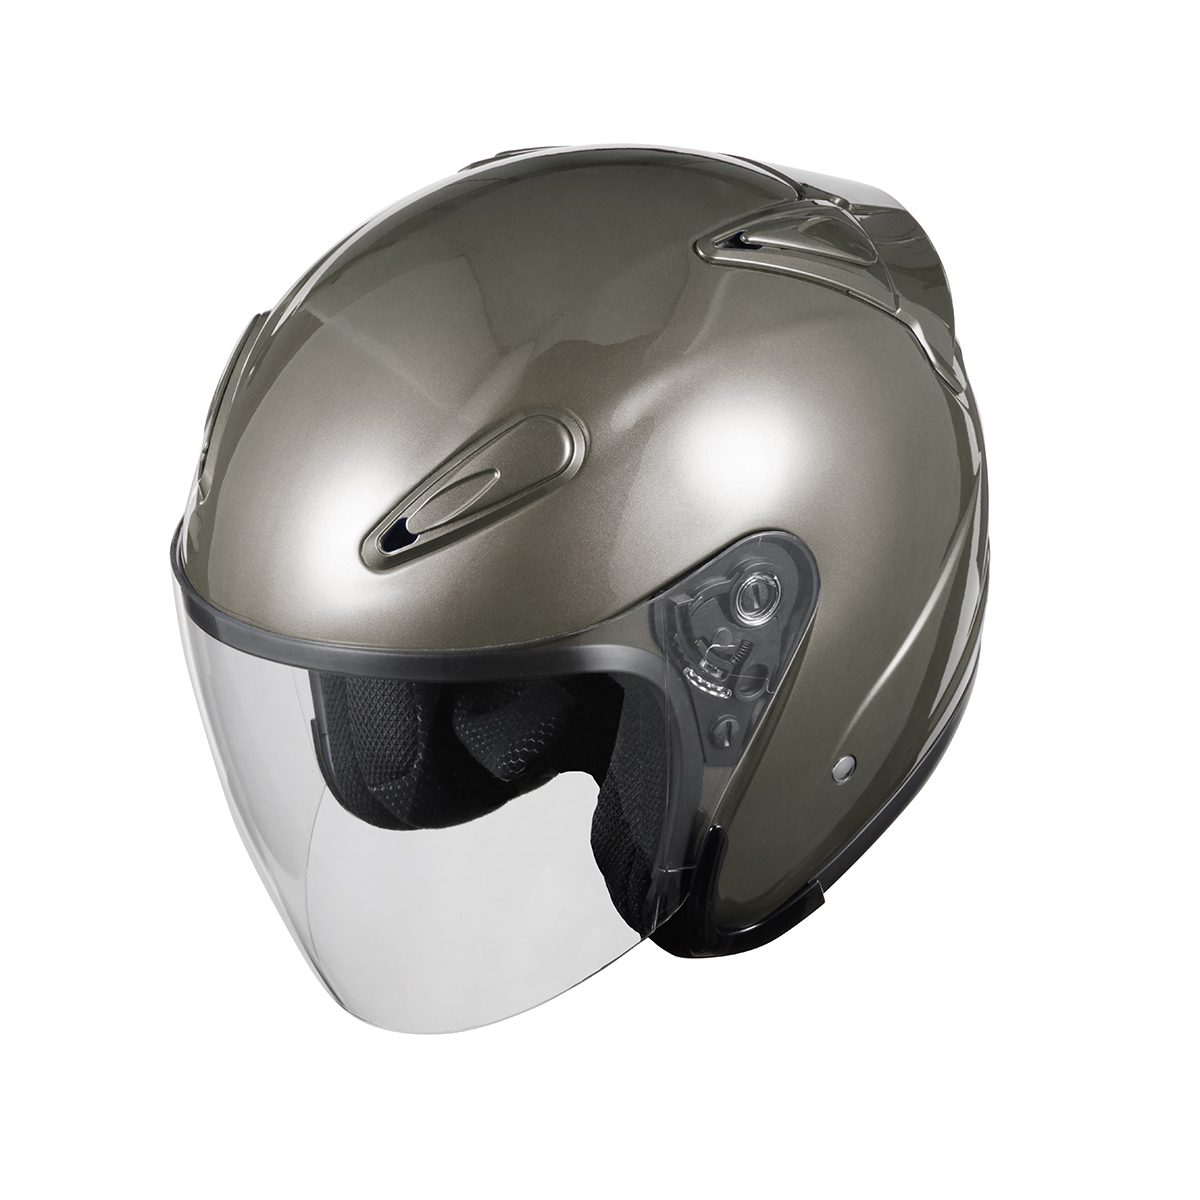 バイクヘルメット SG規格適合 Lサイズ PSCマーク付 エアロフォルムジェットヘルメット ガンメタ バイク ヘルメット エアロ_画像6